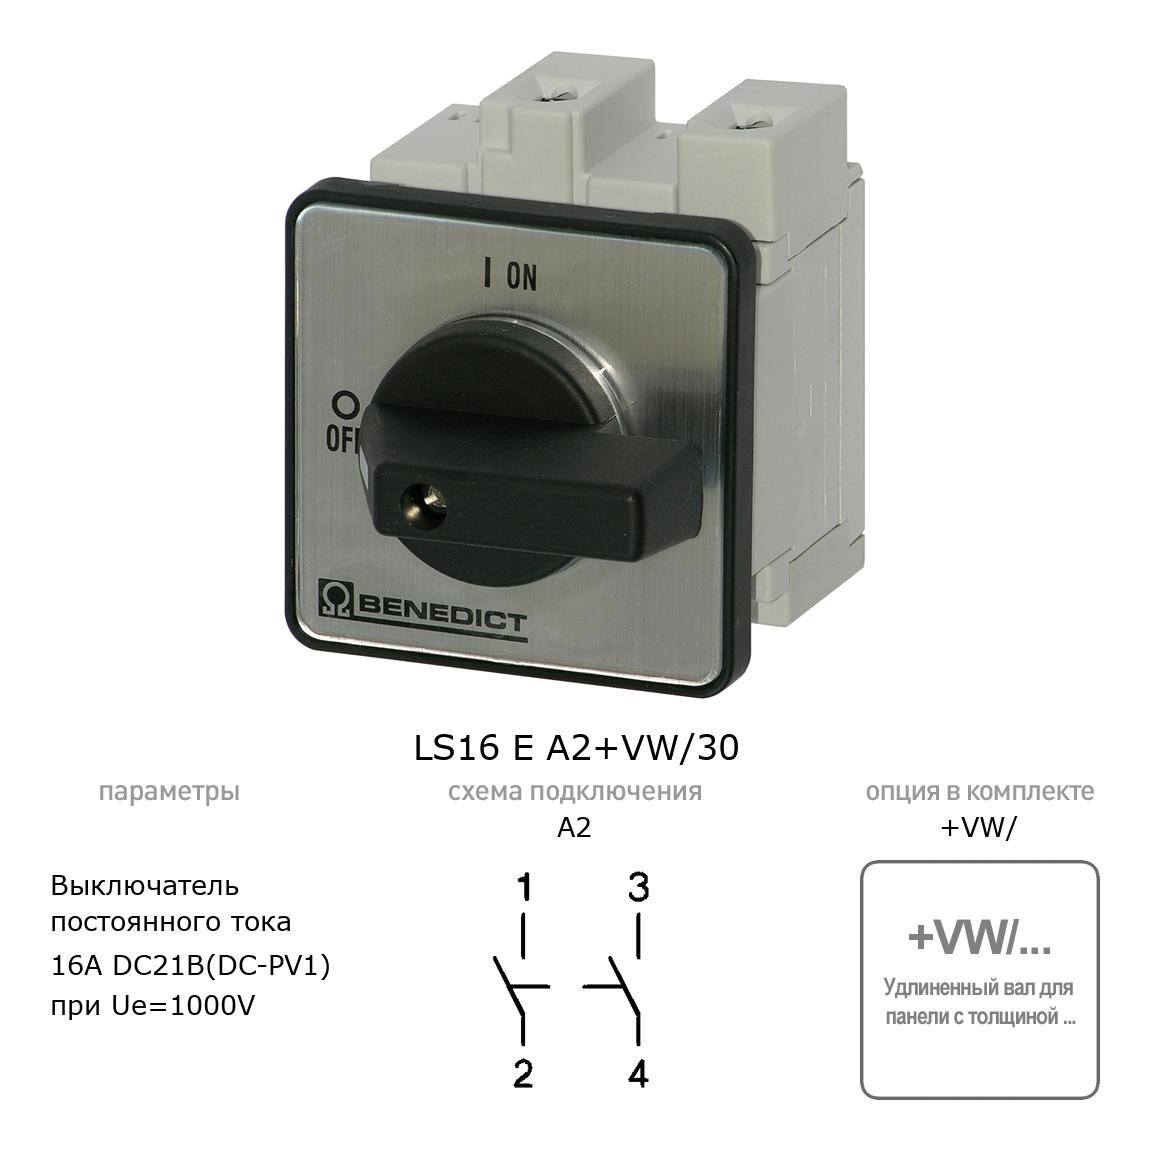 Кулачковый переключатель для постоянного тока (DC) LS16 E A2+VW/30 BENEDICT